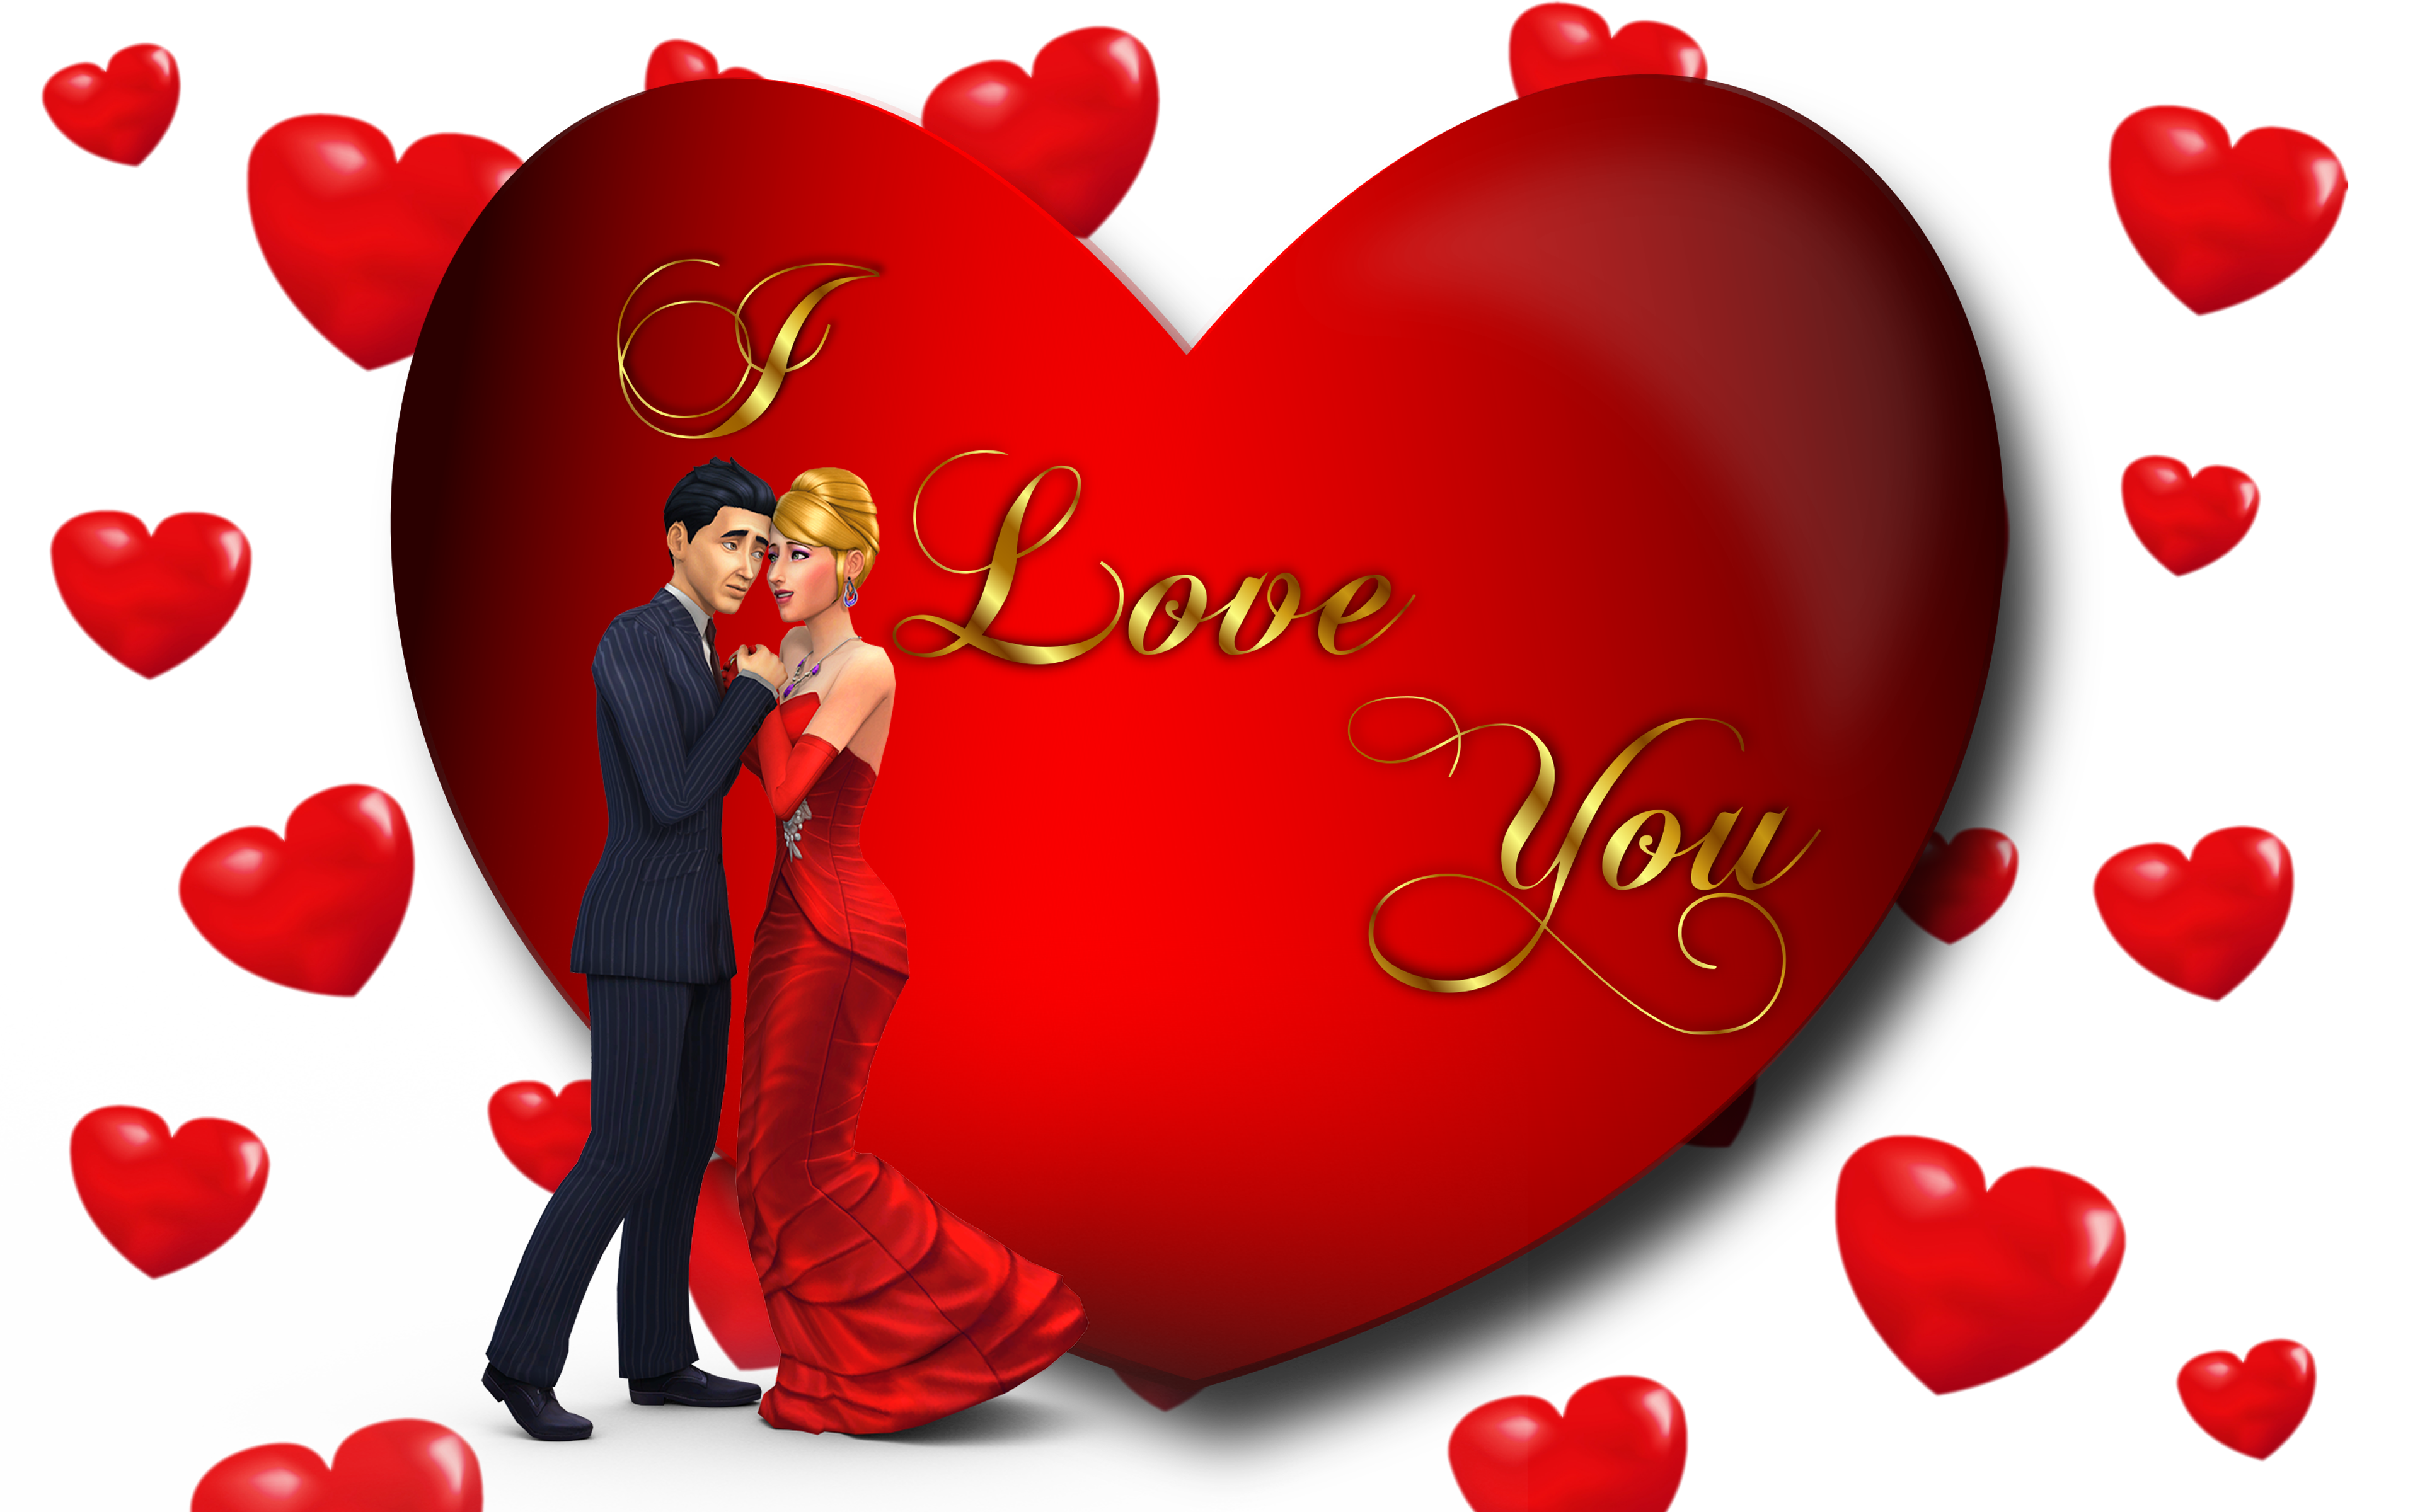 I Love You Loving Couple Red Heart Desktop Hd Wallpaper For Mobile